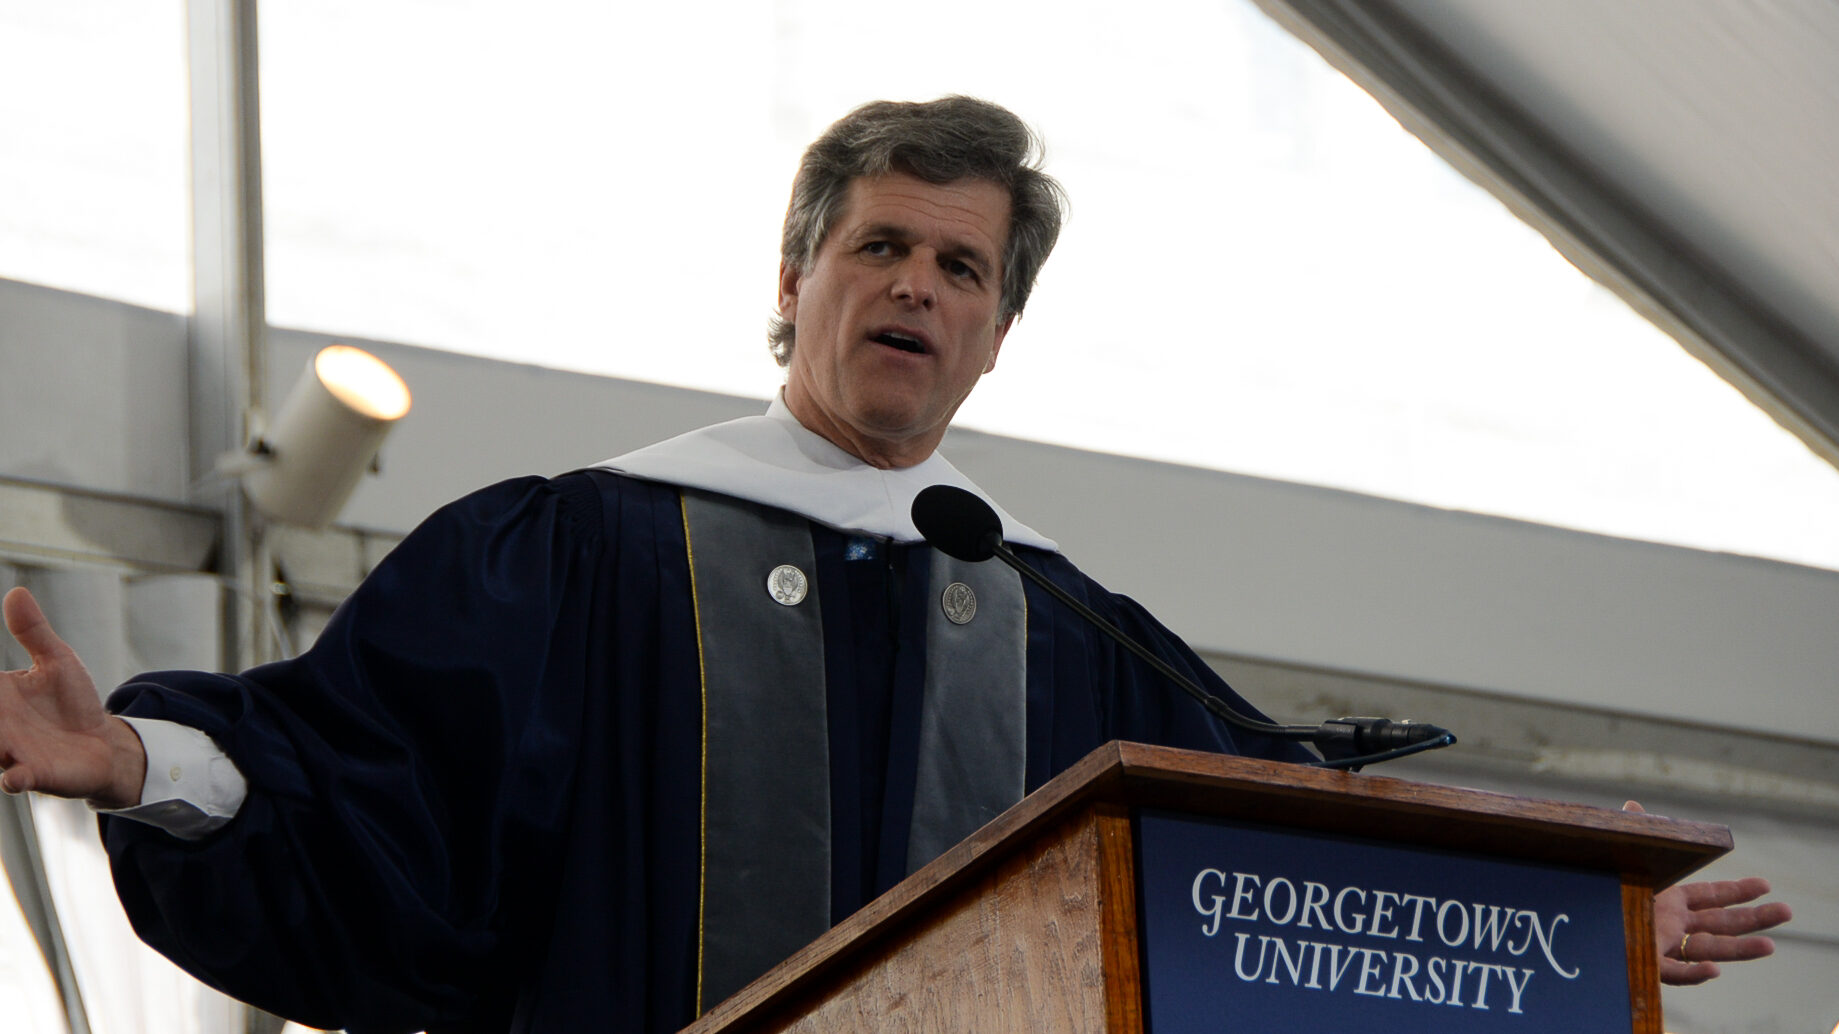 A man in academic regalia speaks at a podium.